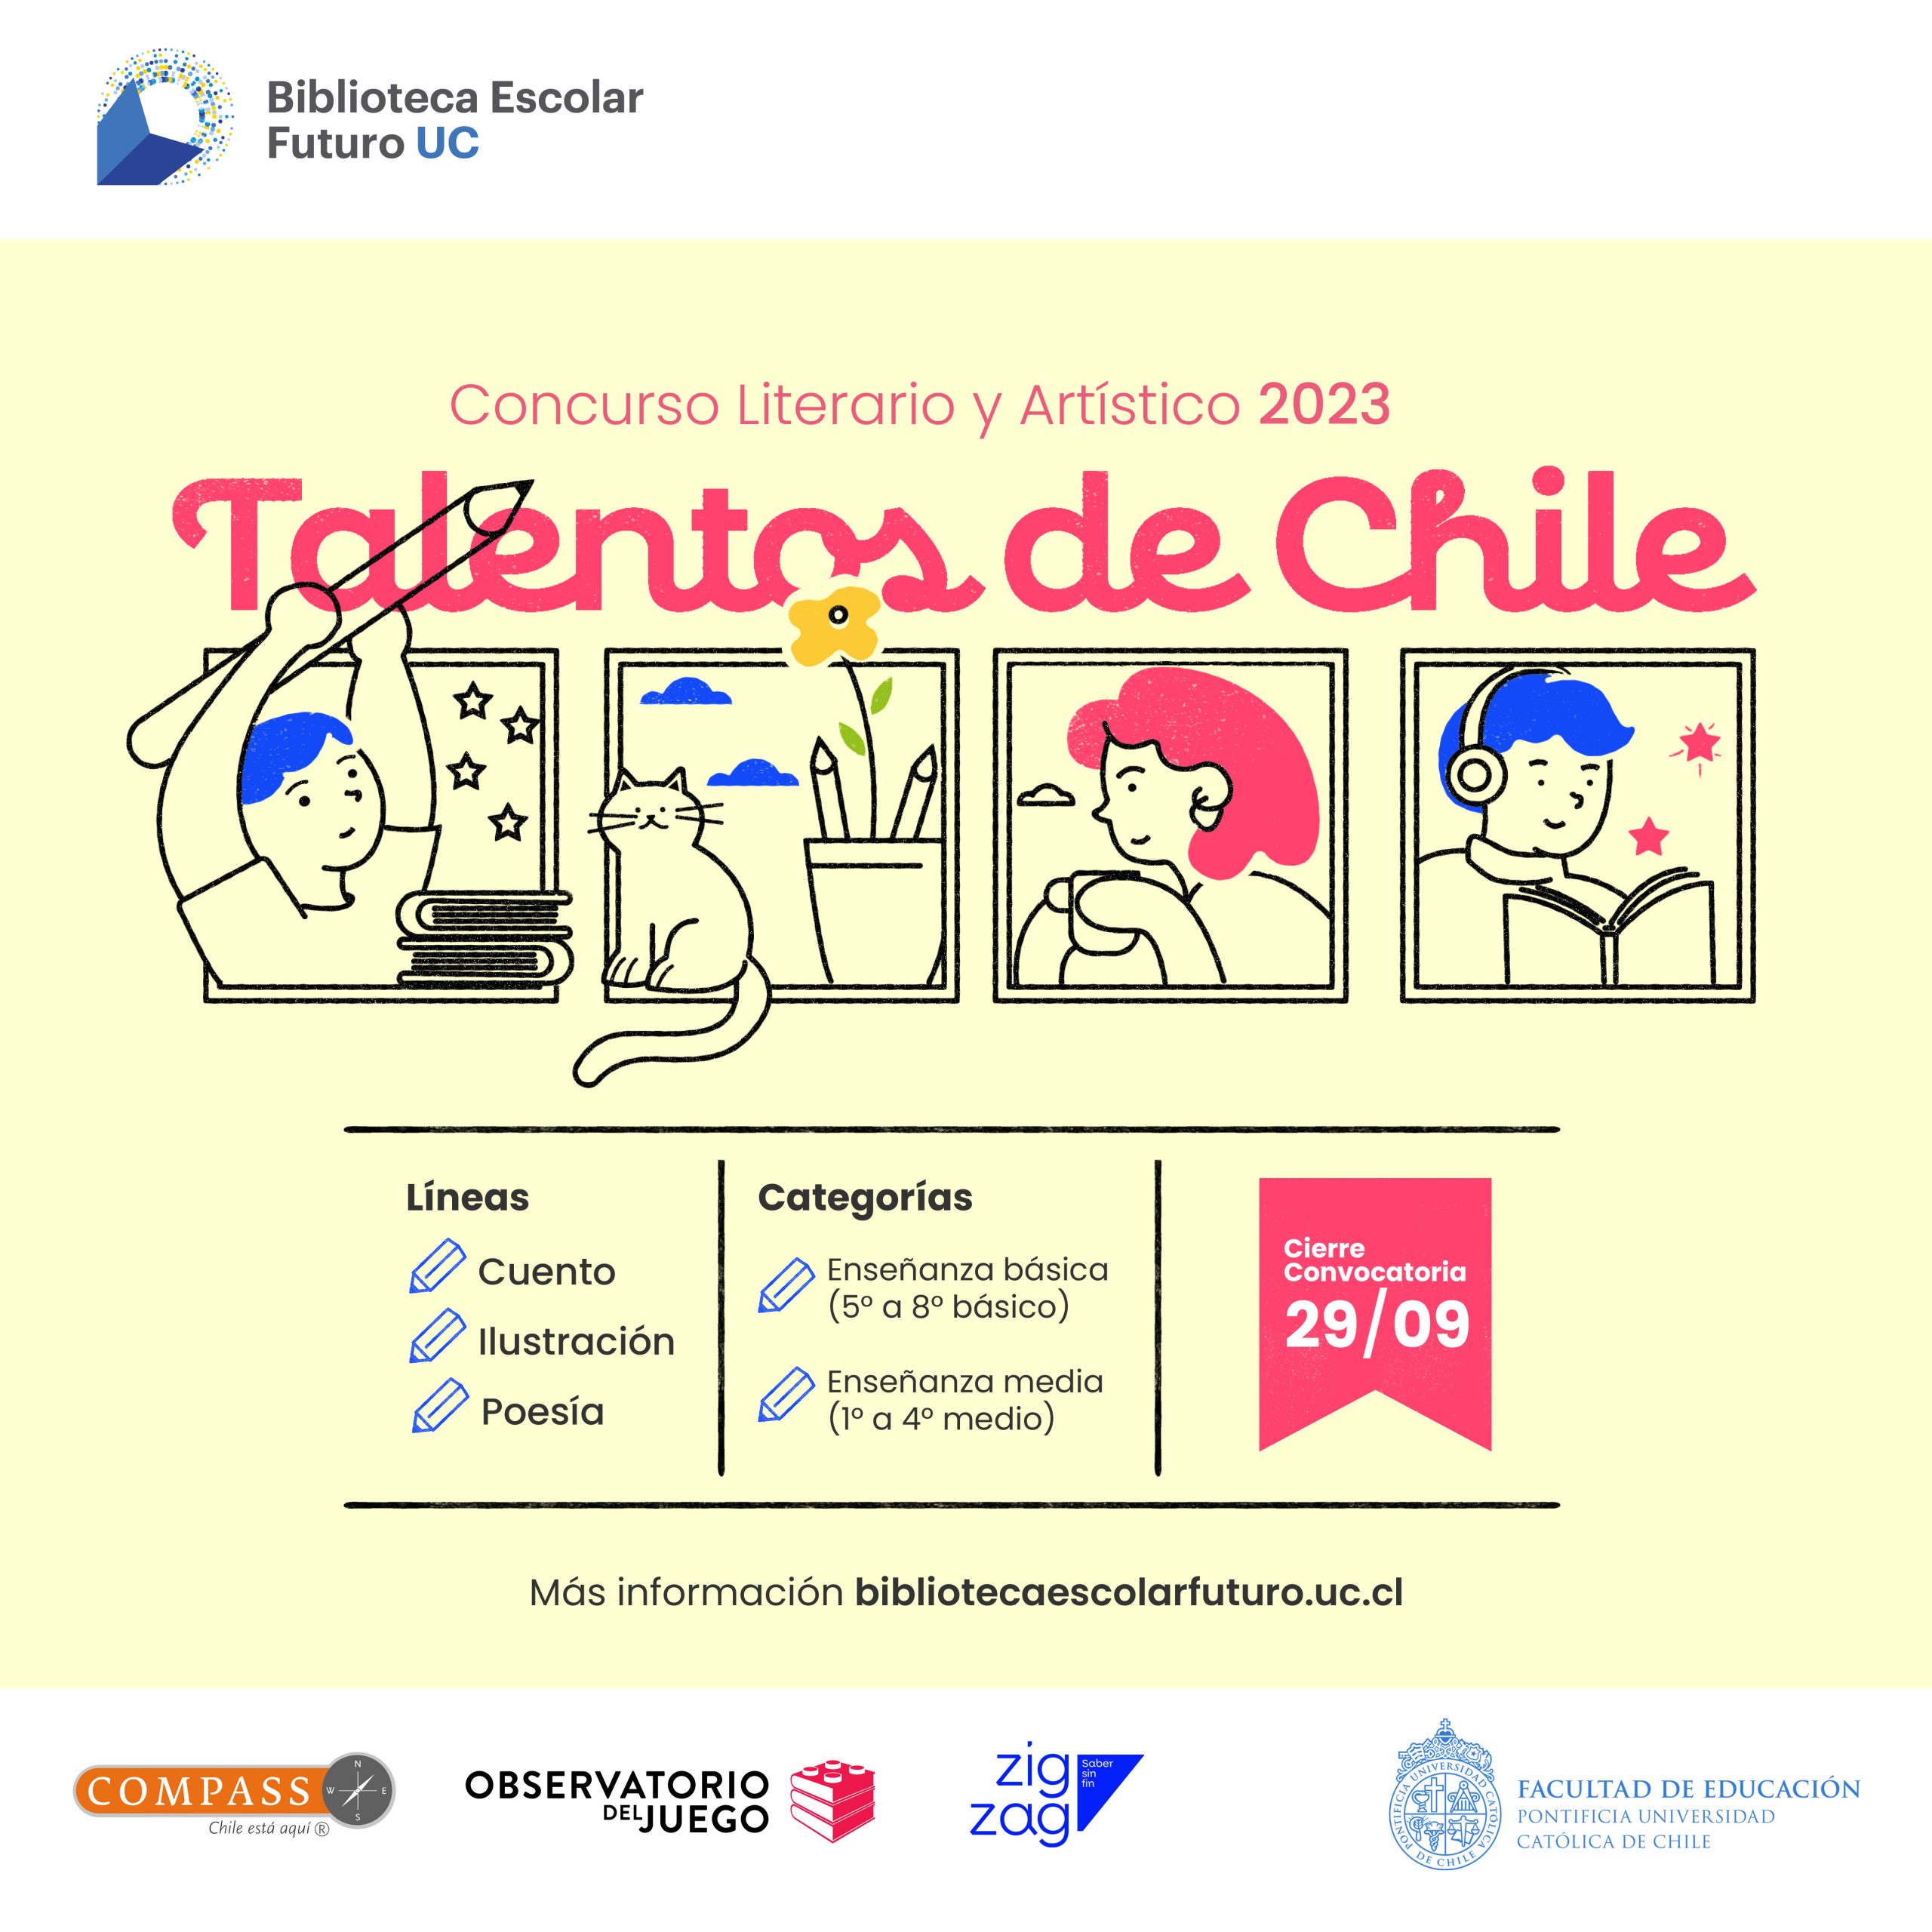 Concurso Literario y Artístico «Talentos de Chile»  de Biblioteca Escolar Futuro